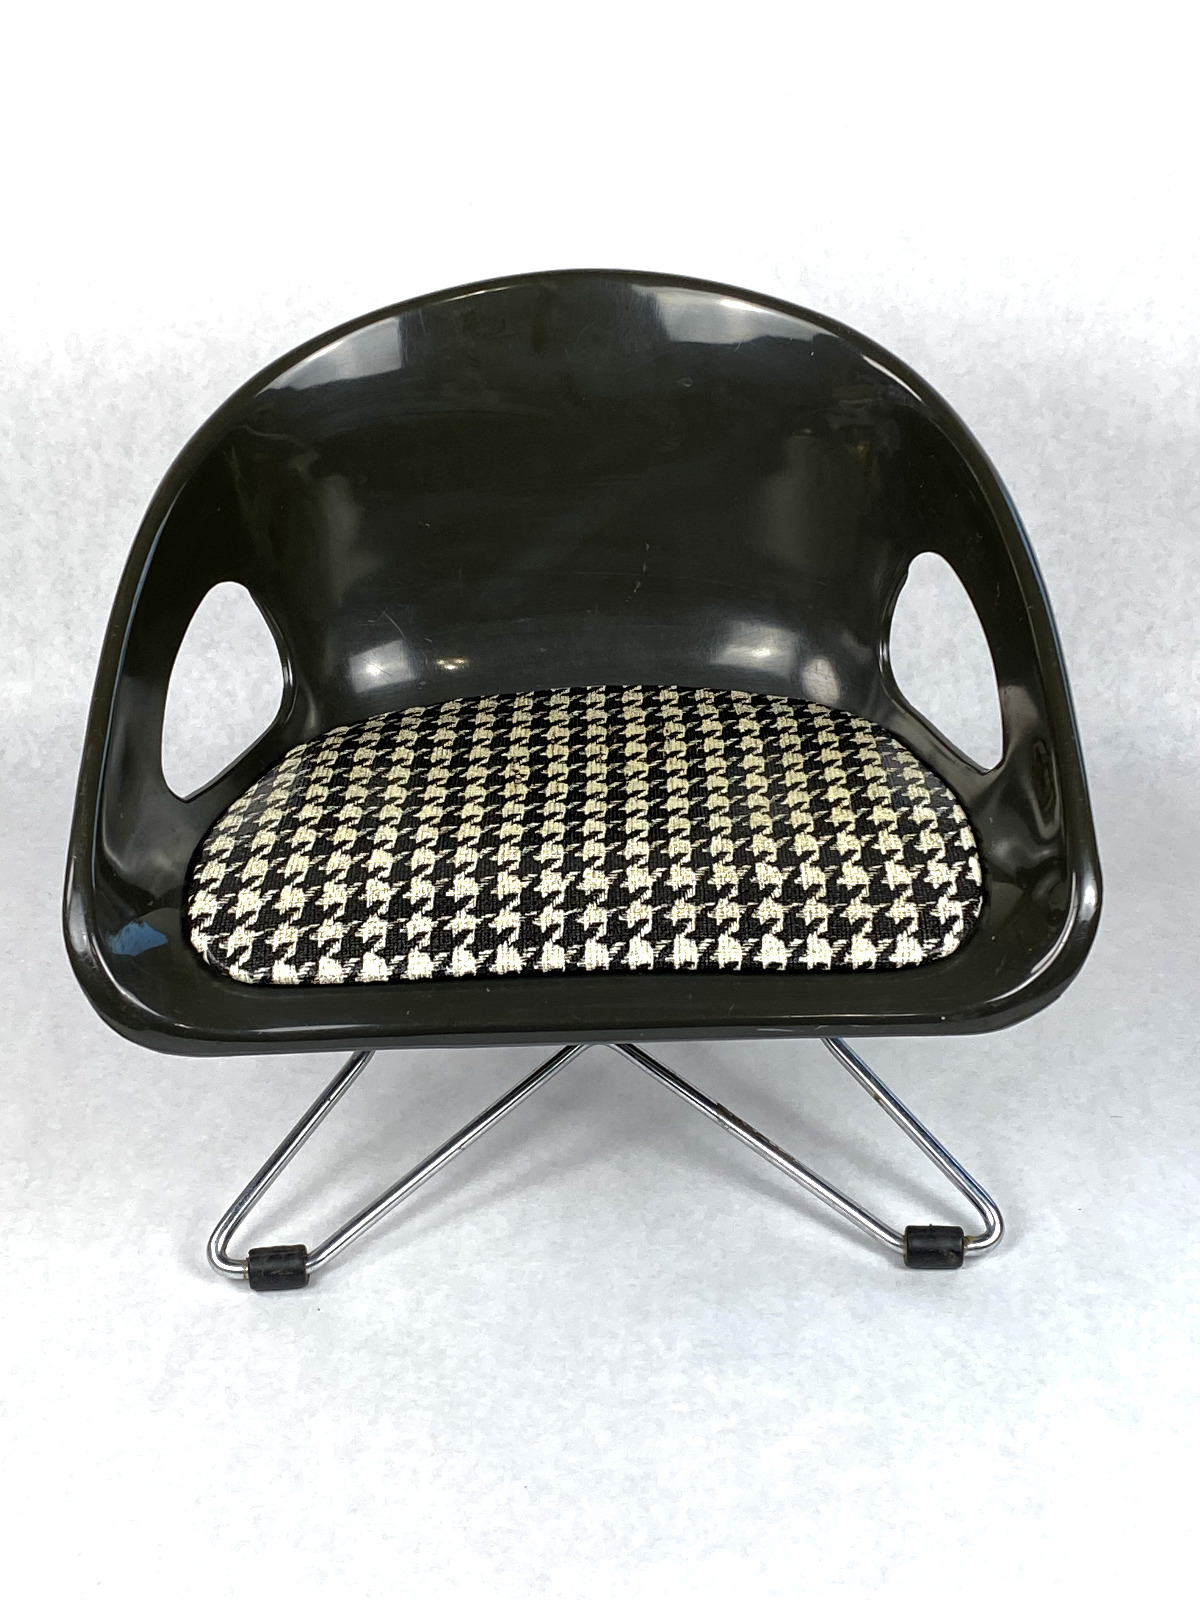 Vintage Cosco Childs Booster Chair Kitchen Black Houndstooth Mid Century Modern